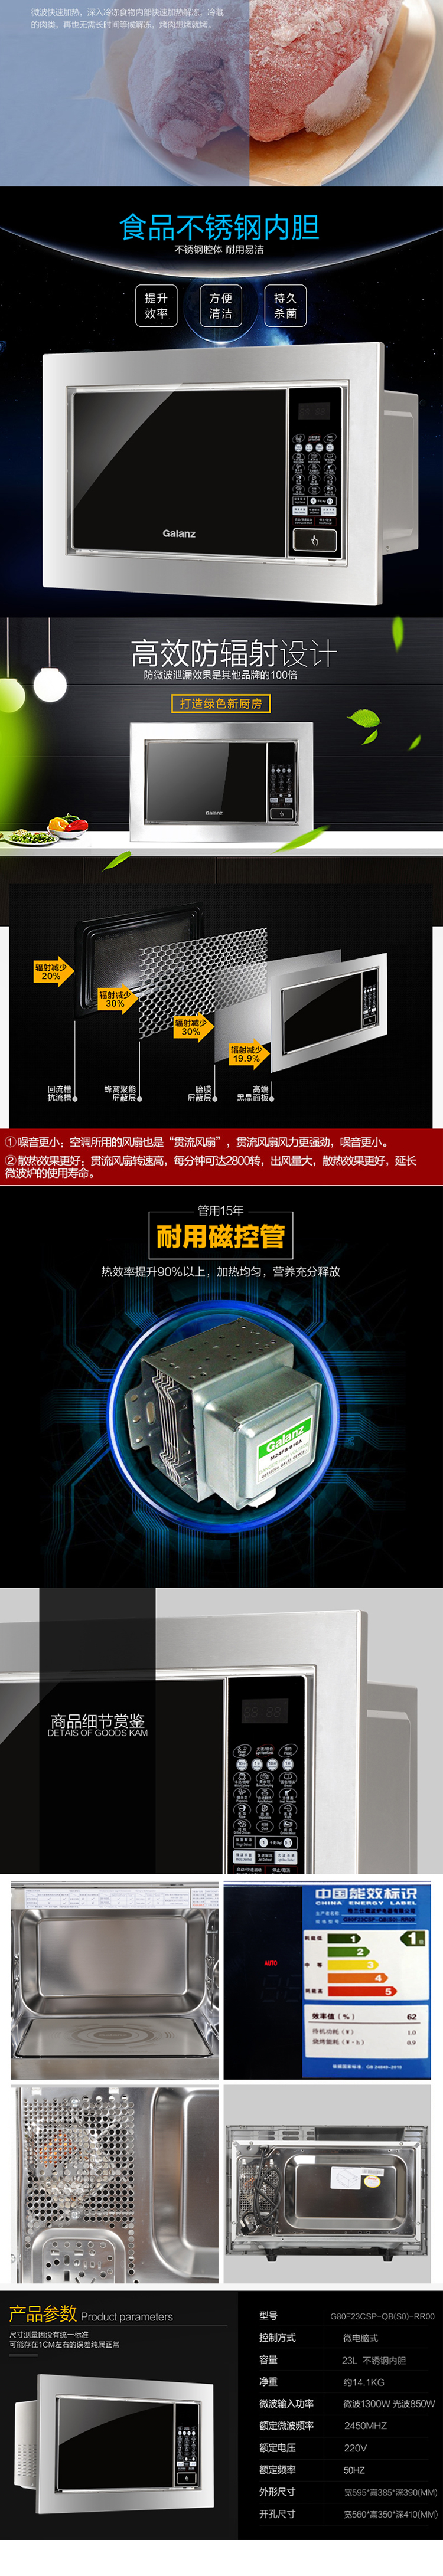 格兰仕(Galanz)嵌入式微波炉G80F23CSP-QB(S0)-RR00 光波炉 烧烤 平板智能23L